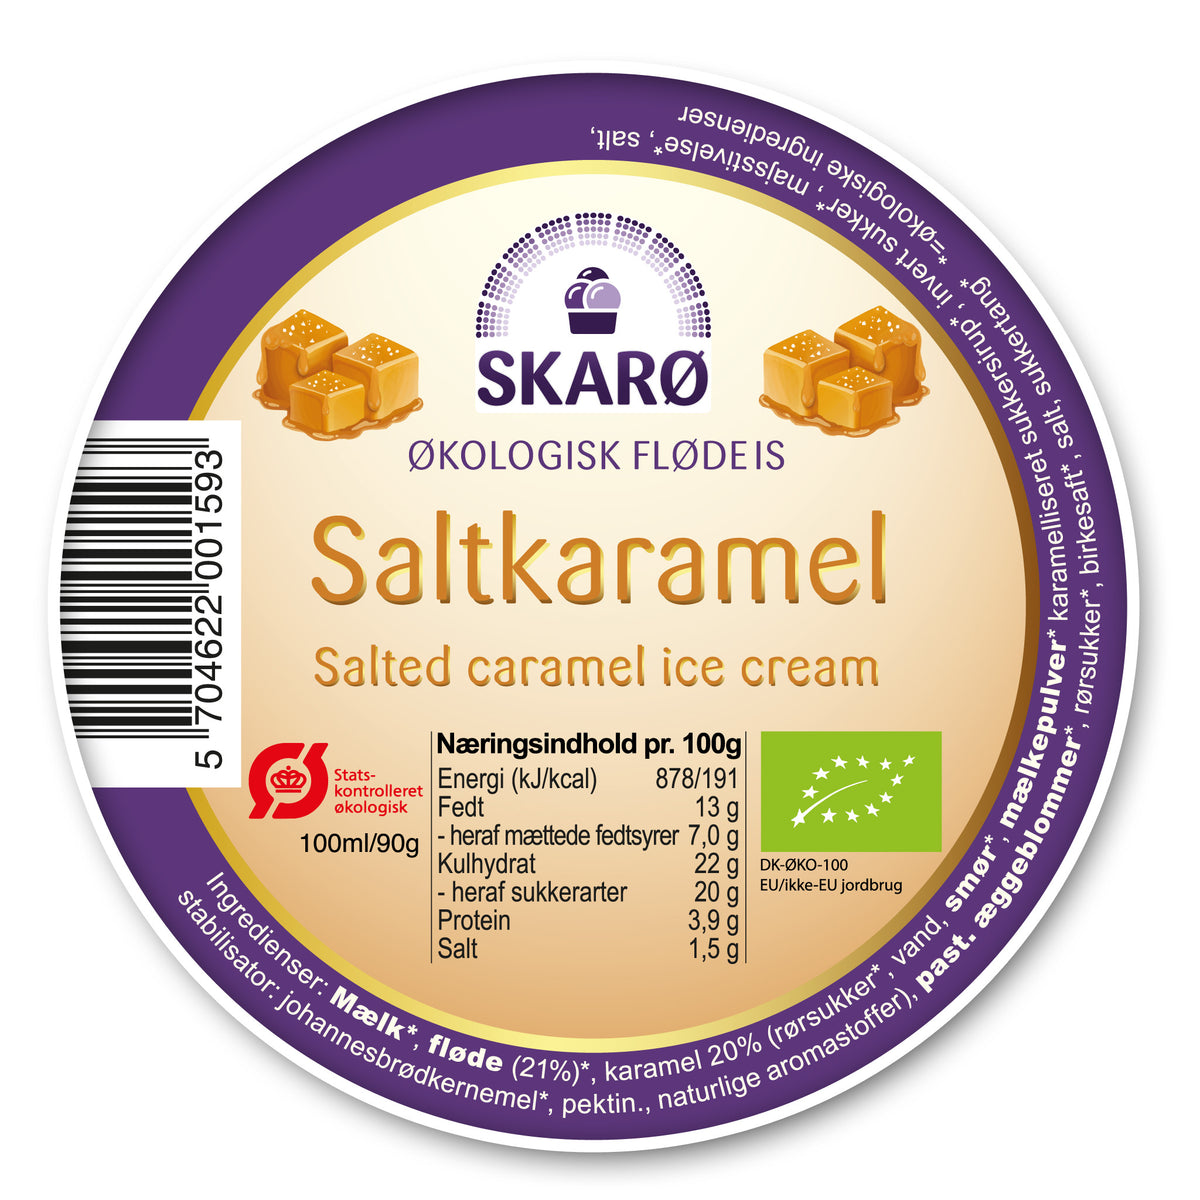 Økologisk saltkaramel gourmetflødeis fra Skarø